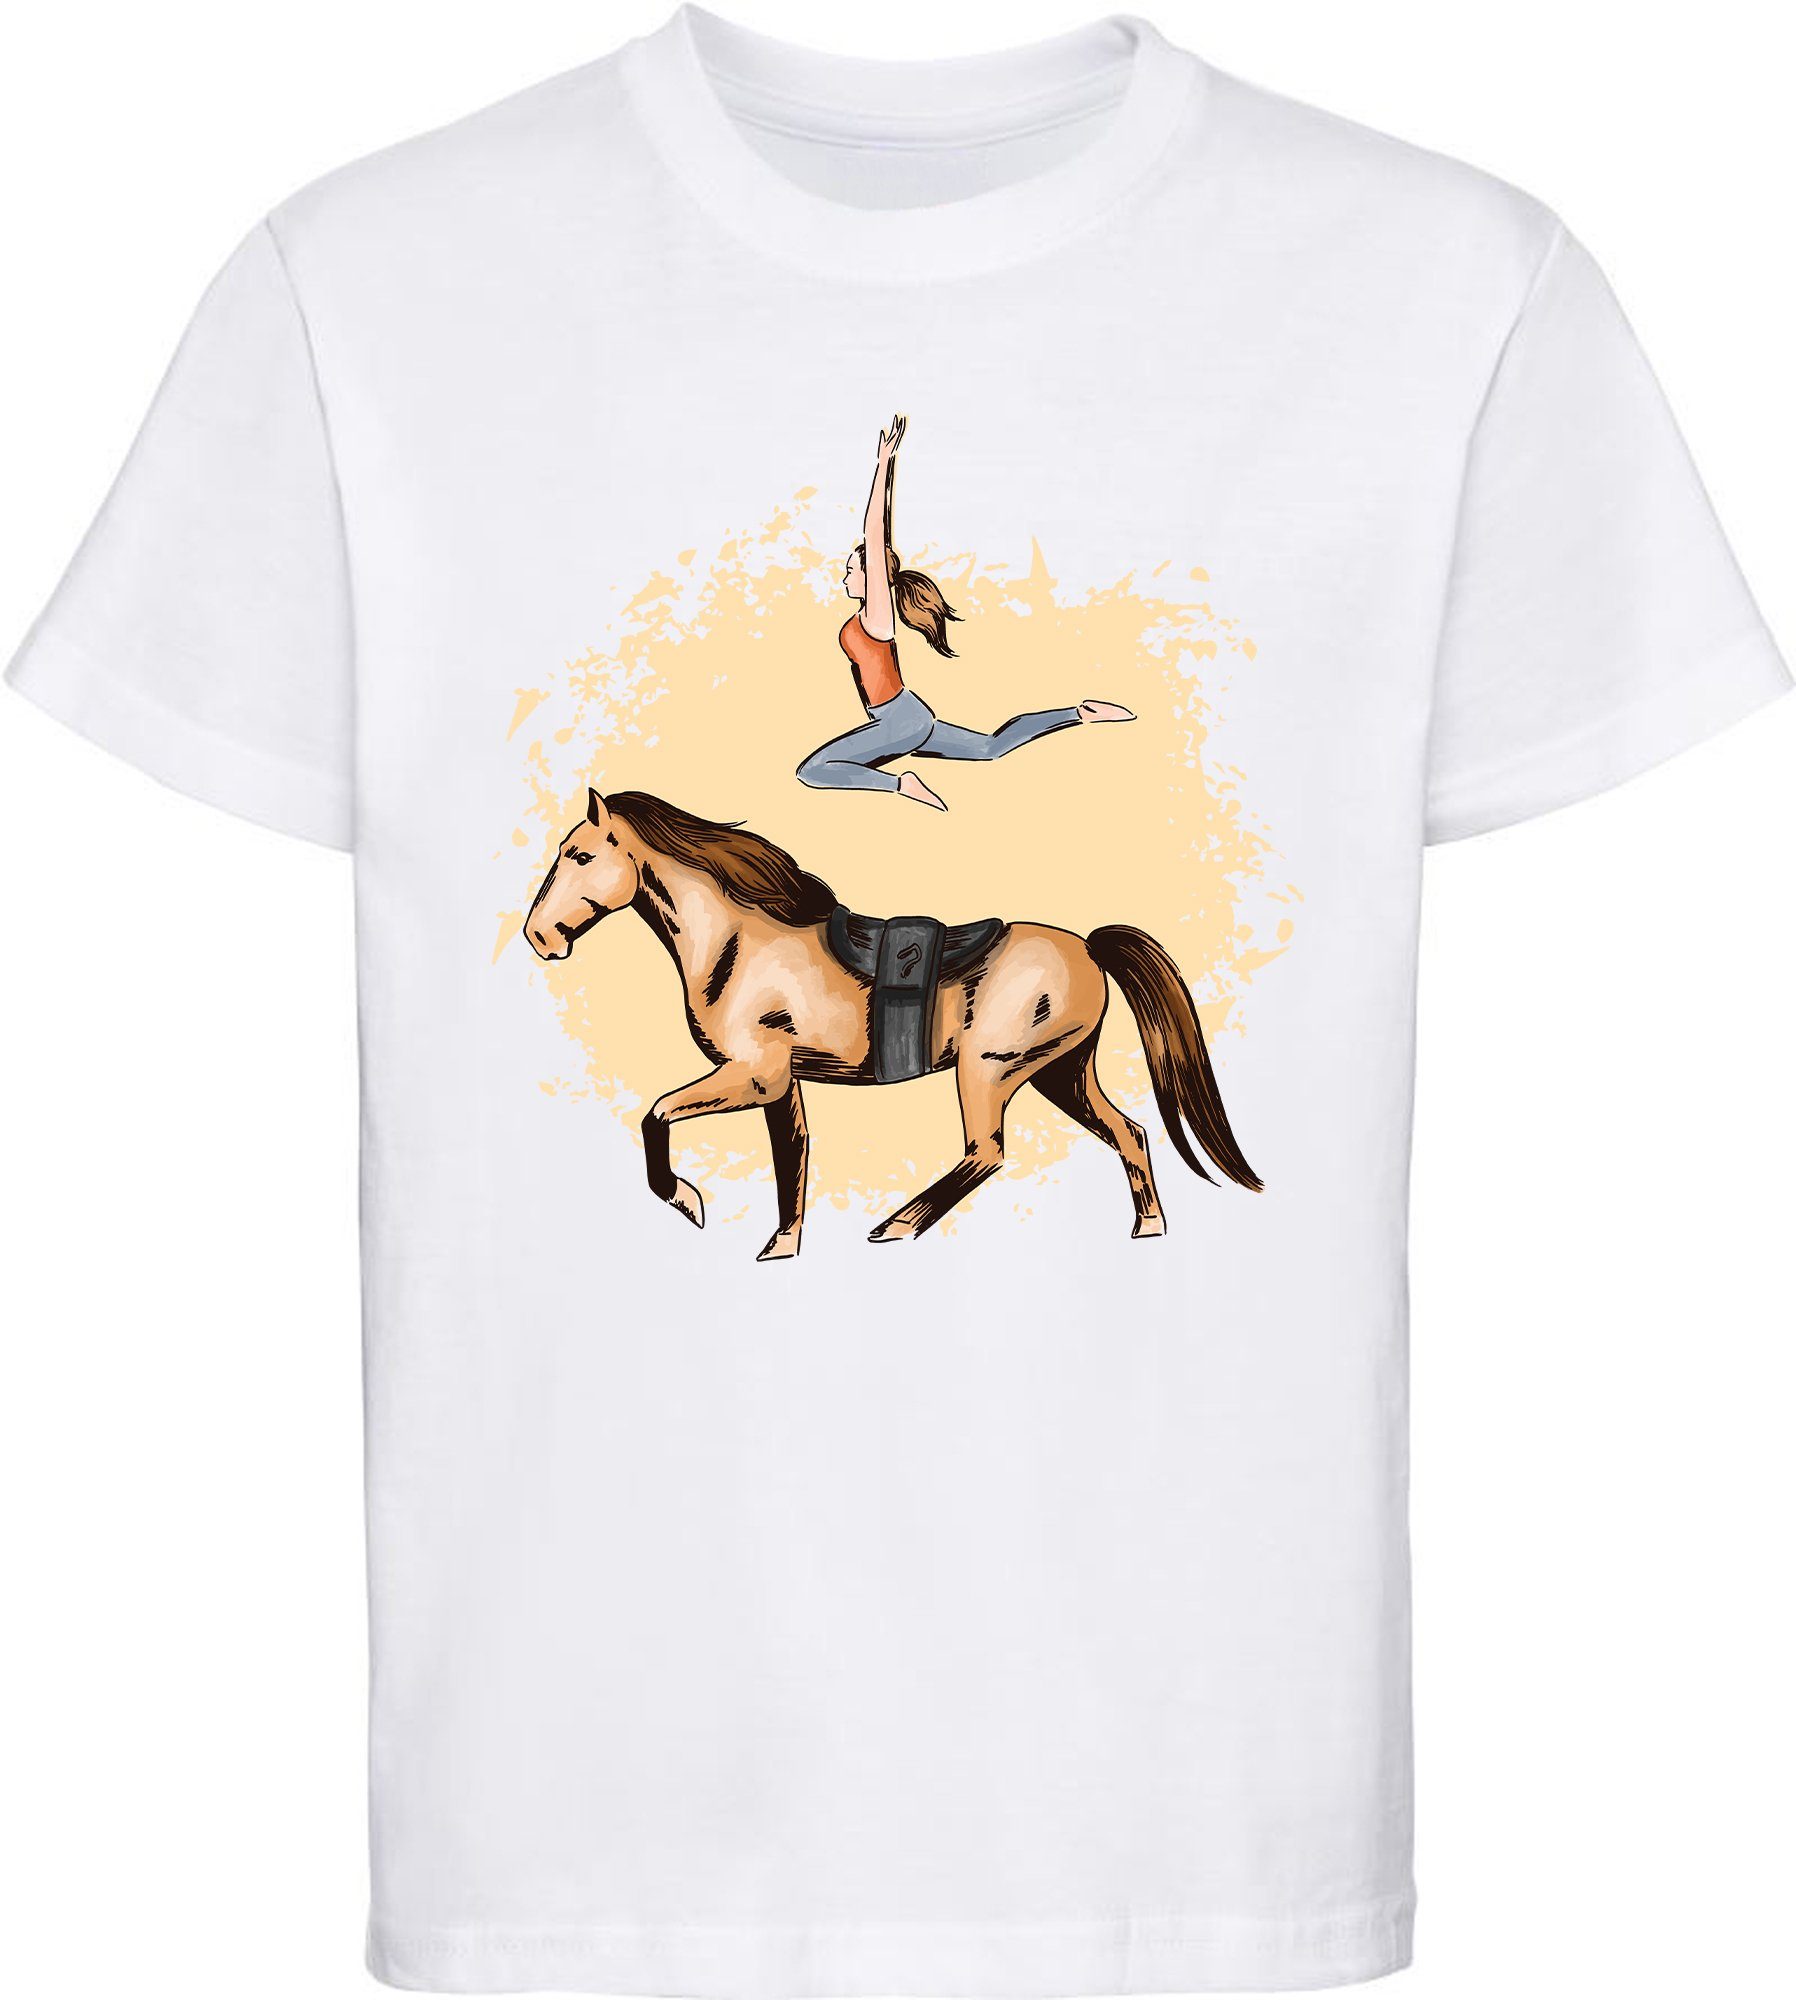 MyDesign24 Print-Shirt bedrucktes Mädchen Pferde T-Shirt mit Turnerin Baumwollshirt mit Aufdruck, i172 weiss